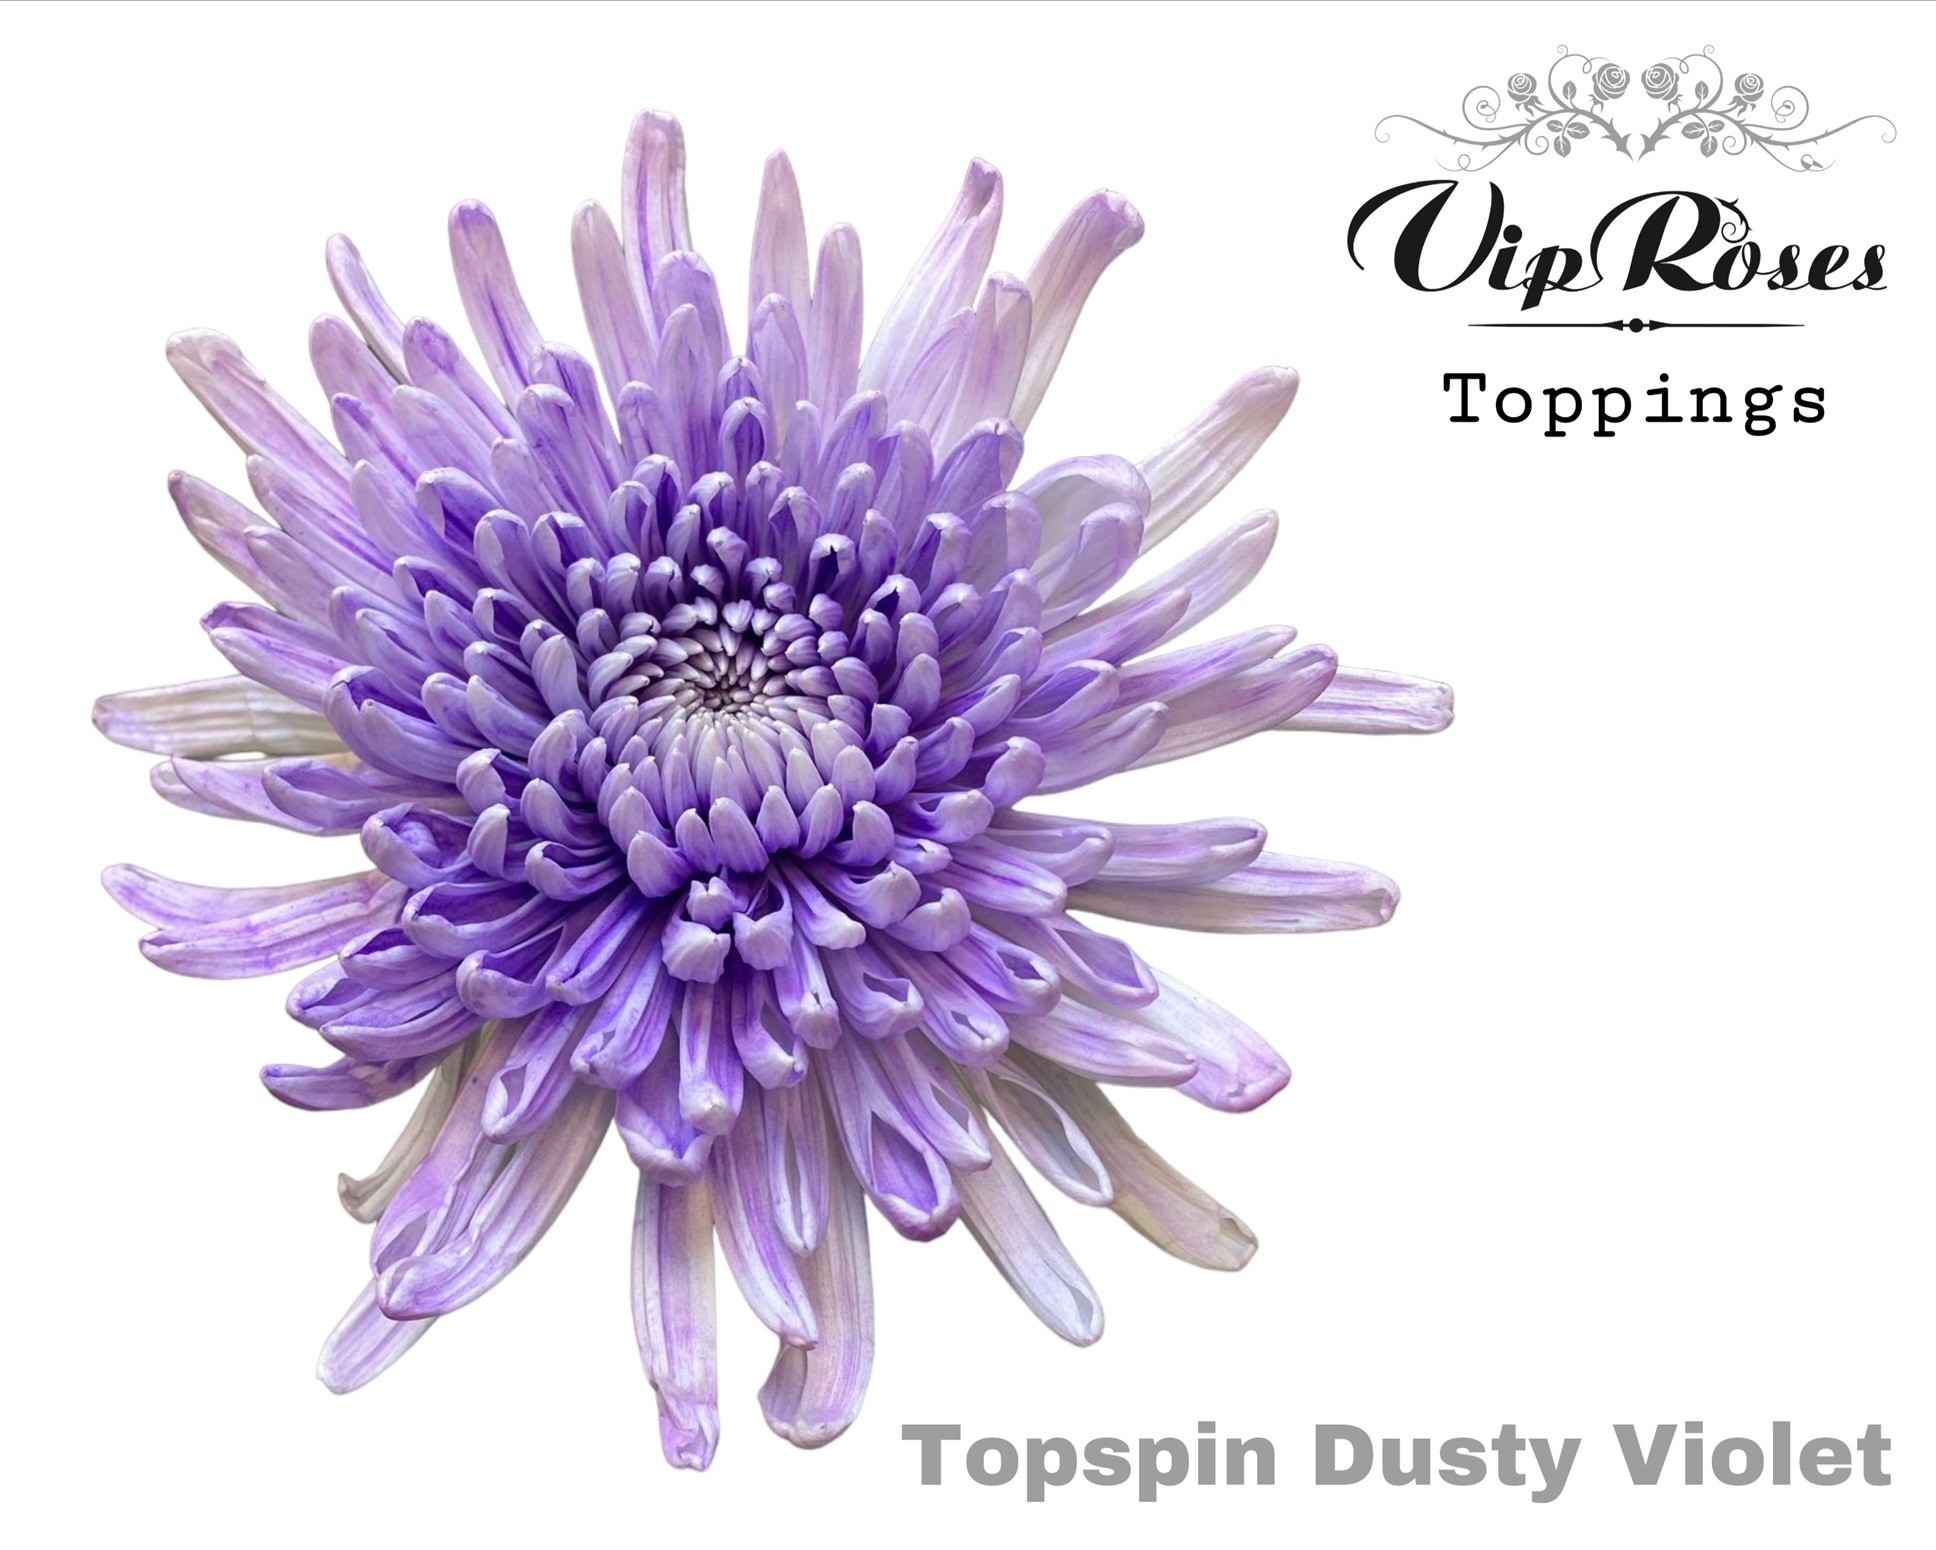 Срезанные цветы оптом Chrys bl paint topspin dusty violet от 20шт из Голландии с доставкой по России